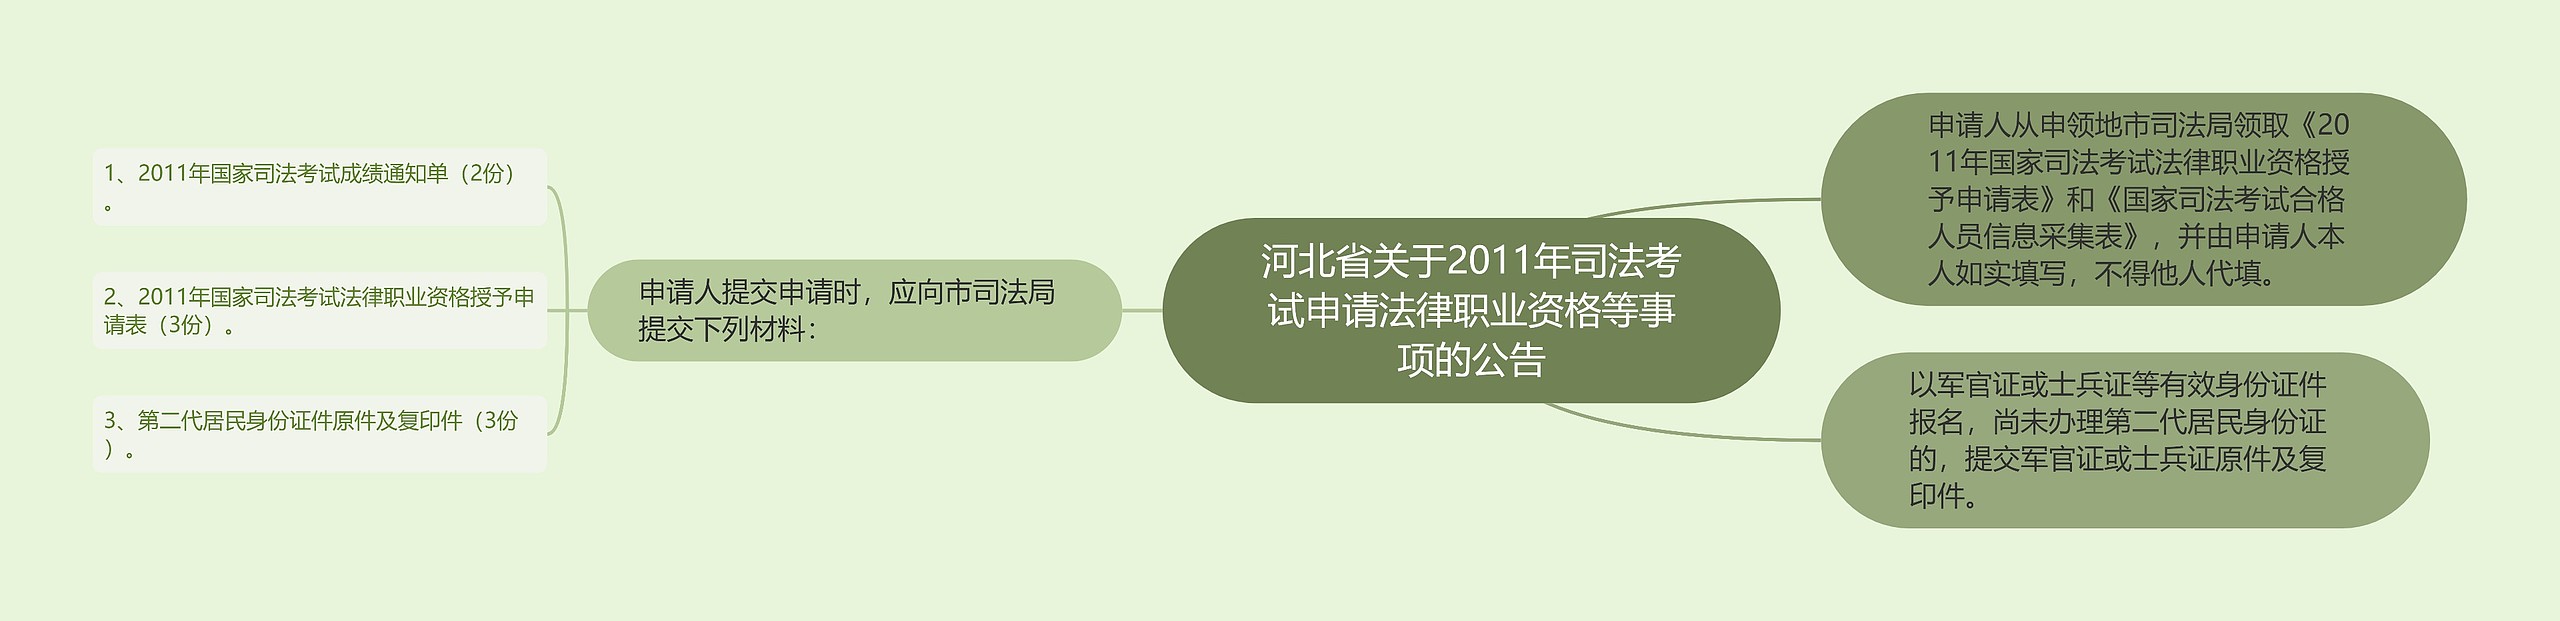 河北省关于2011年司法考试申请法律职业资格等事项的公告